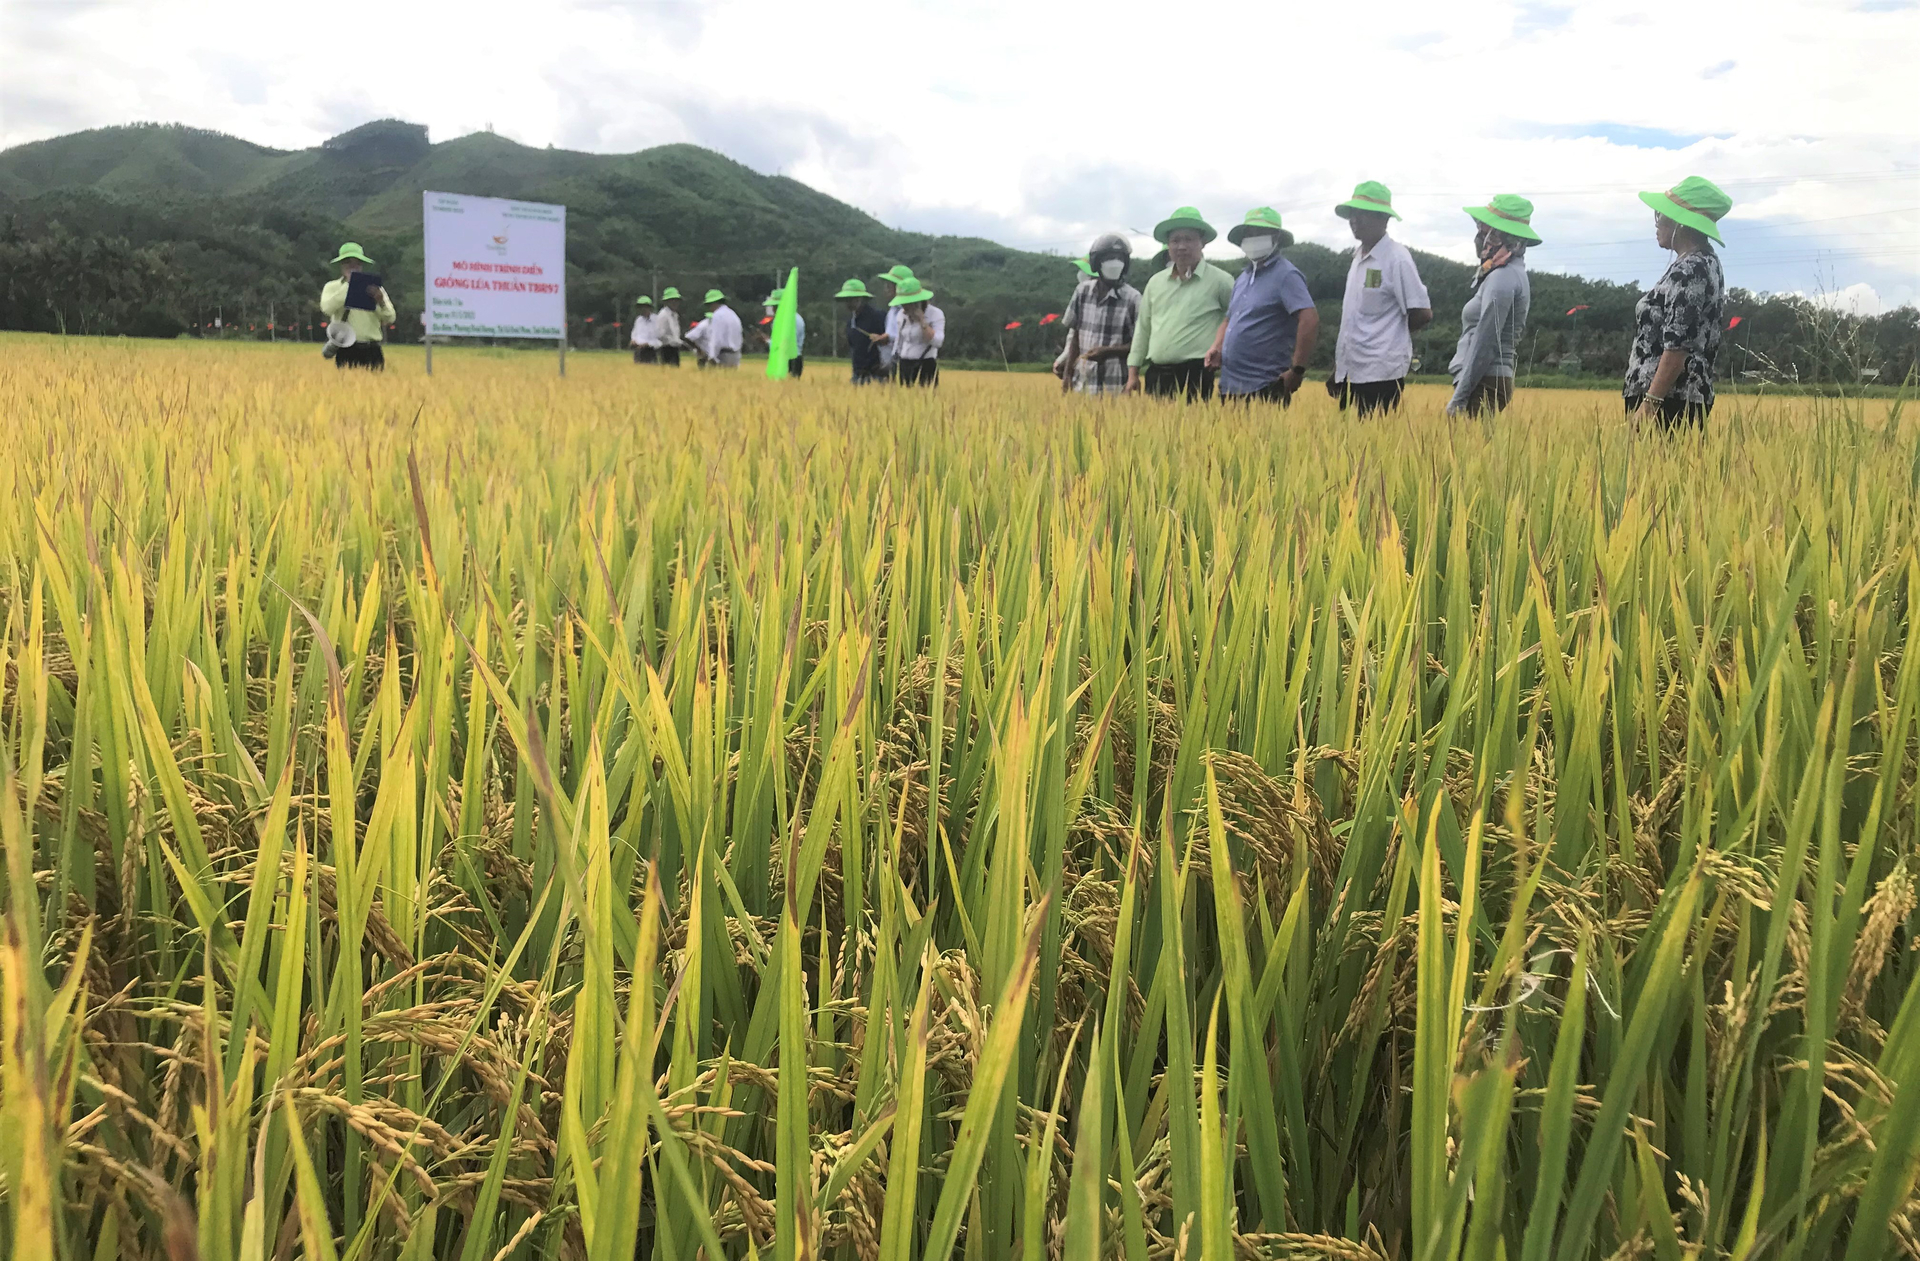 Trung tâm Dịch vụ nông nghiệp thị xã Hoài Nhơn (Bình Định) tổ chức tham quan ruộng sản xuất giống lúa TBR97 tại HTX Nông nghiệp Hoài Hương. Ảnh: V.Đ.T.